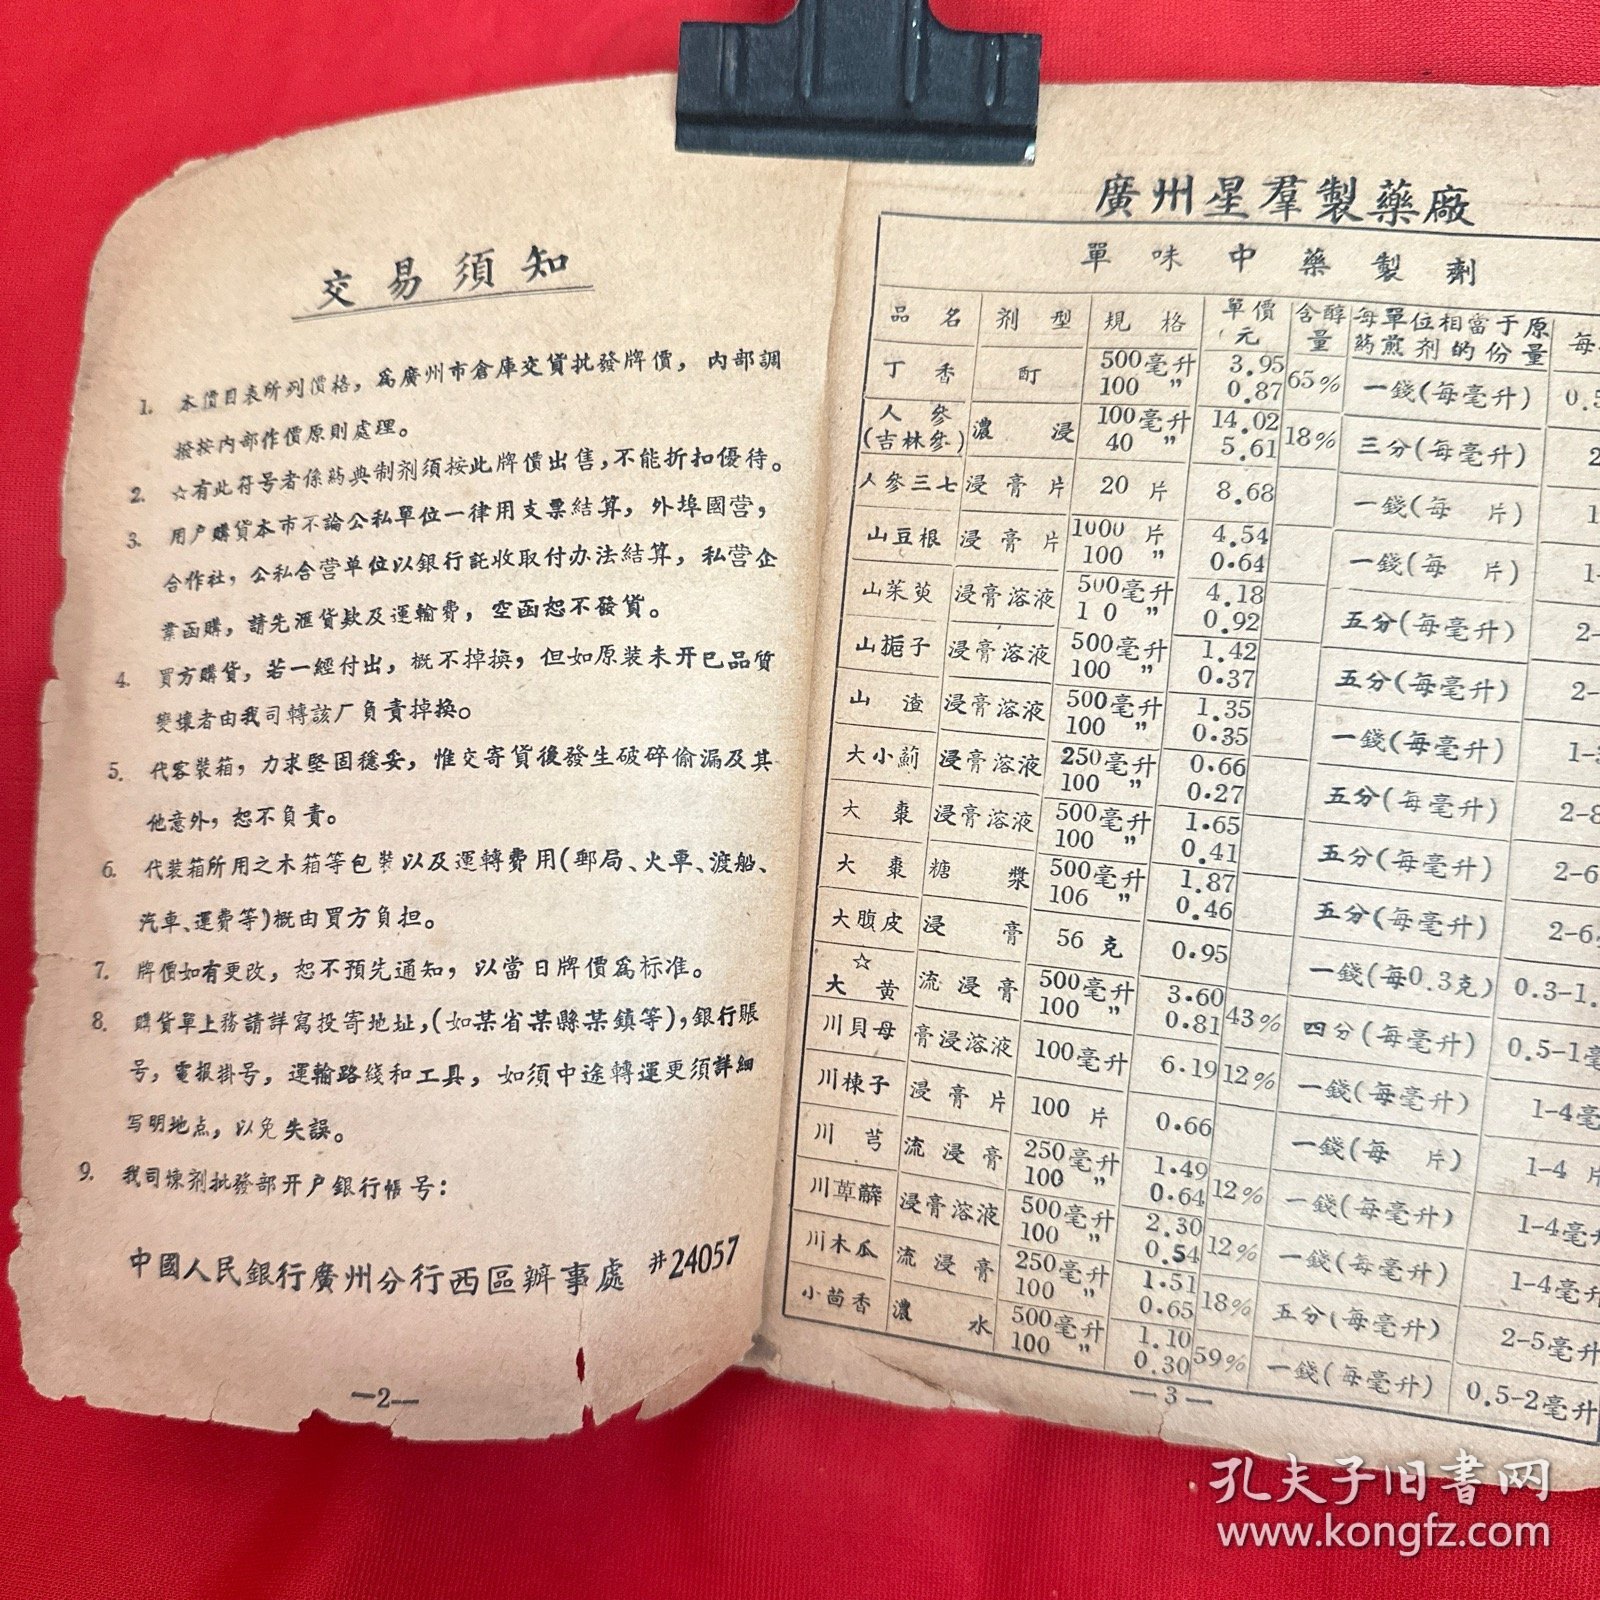 五十年代出版的中药医书 中国药材公司广东省广州市公司中药炼剂价目表 内含解放前的老中药配方，非常少见和稀少. 一本老配方书。